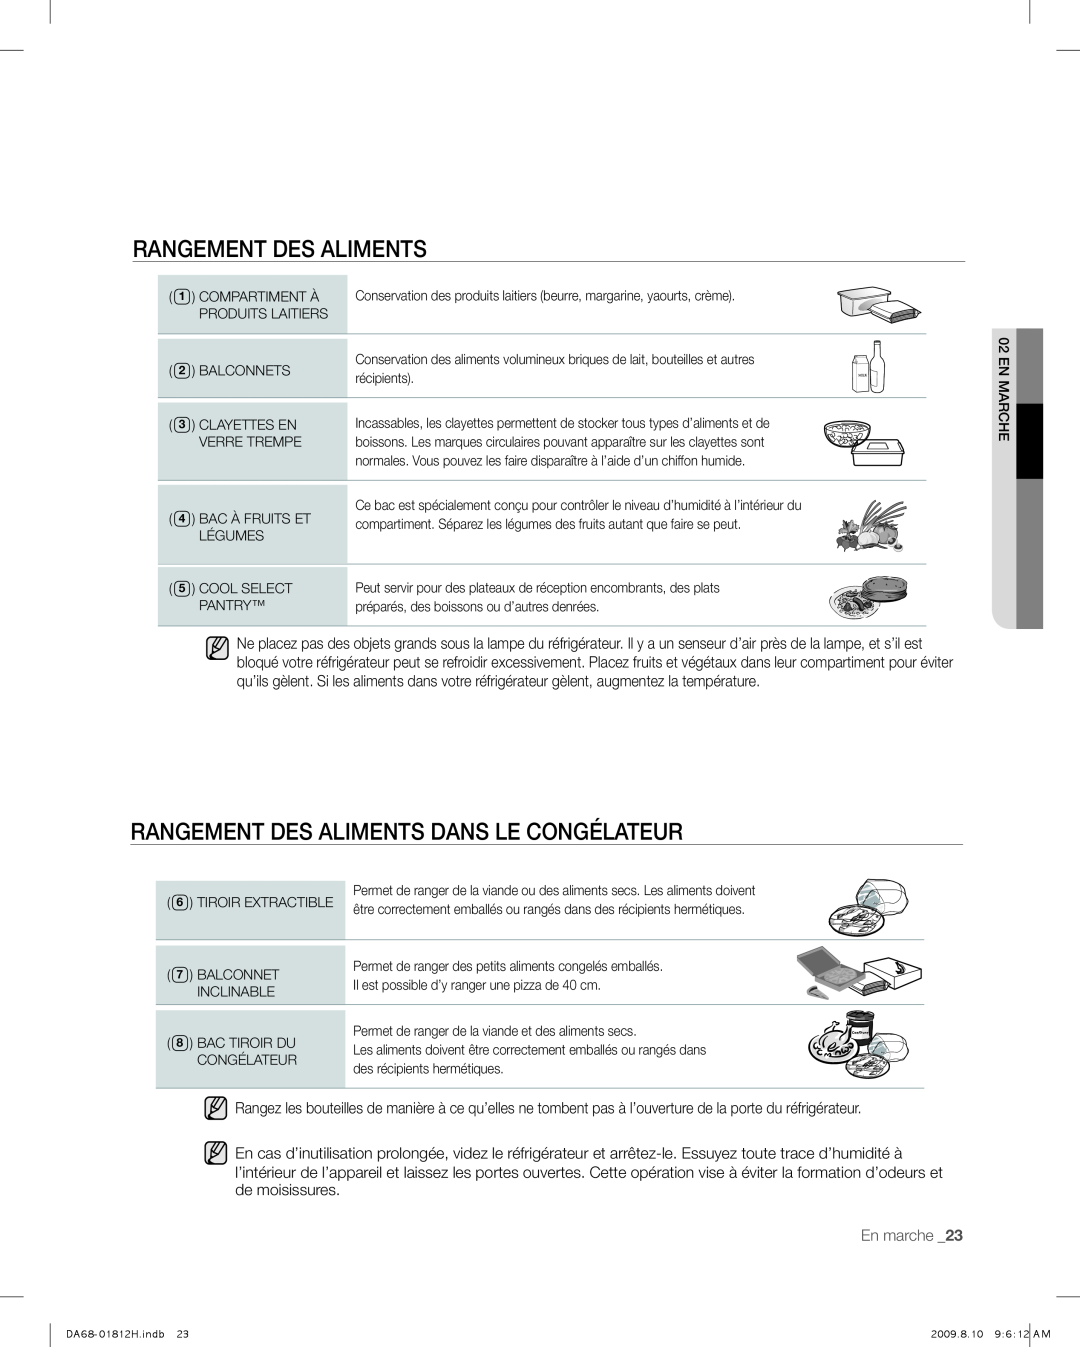 Samsung RF263 user manual Rangement Des Aliments Dans Le Congélateur, En marche _23 